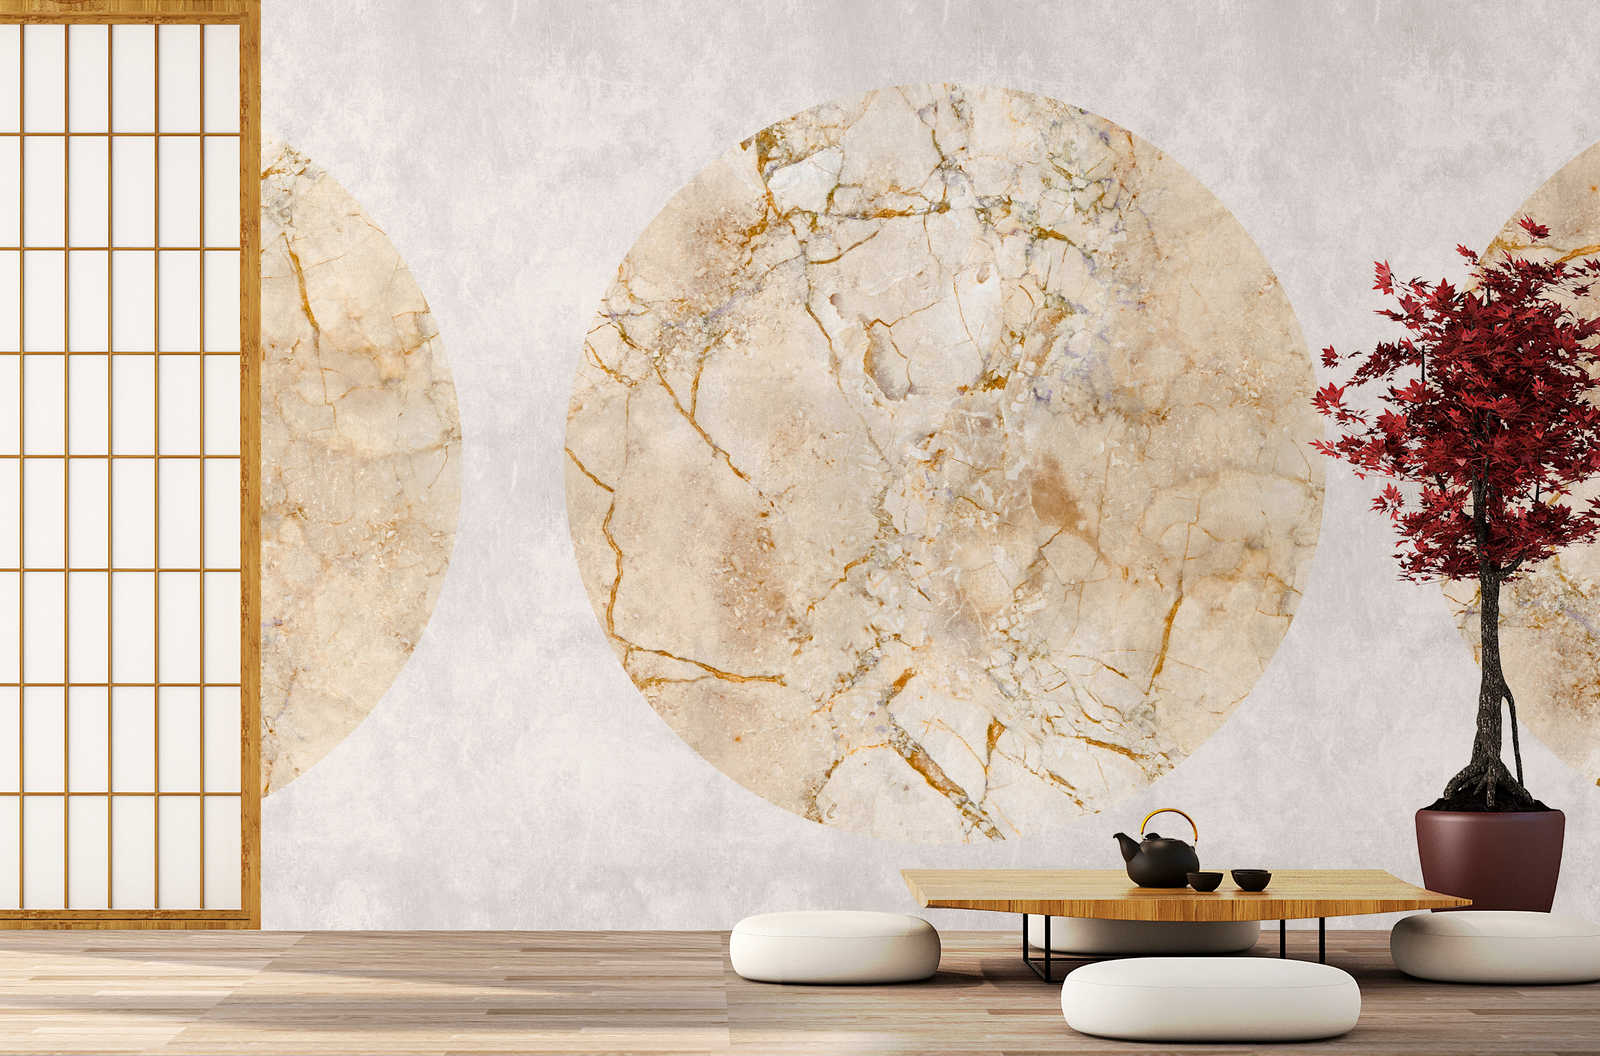             Venus 1 - Papier peint panoramique marbre doré avec motif circulaire & aspect crépi
        